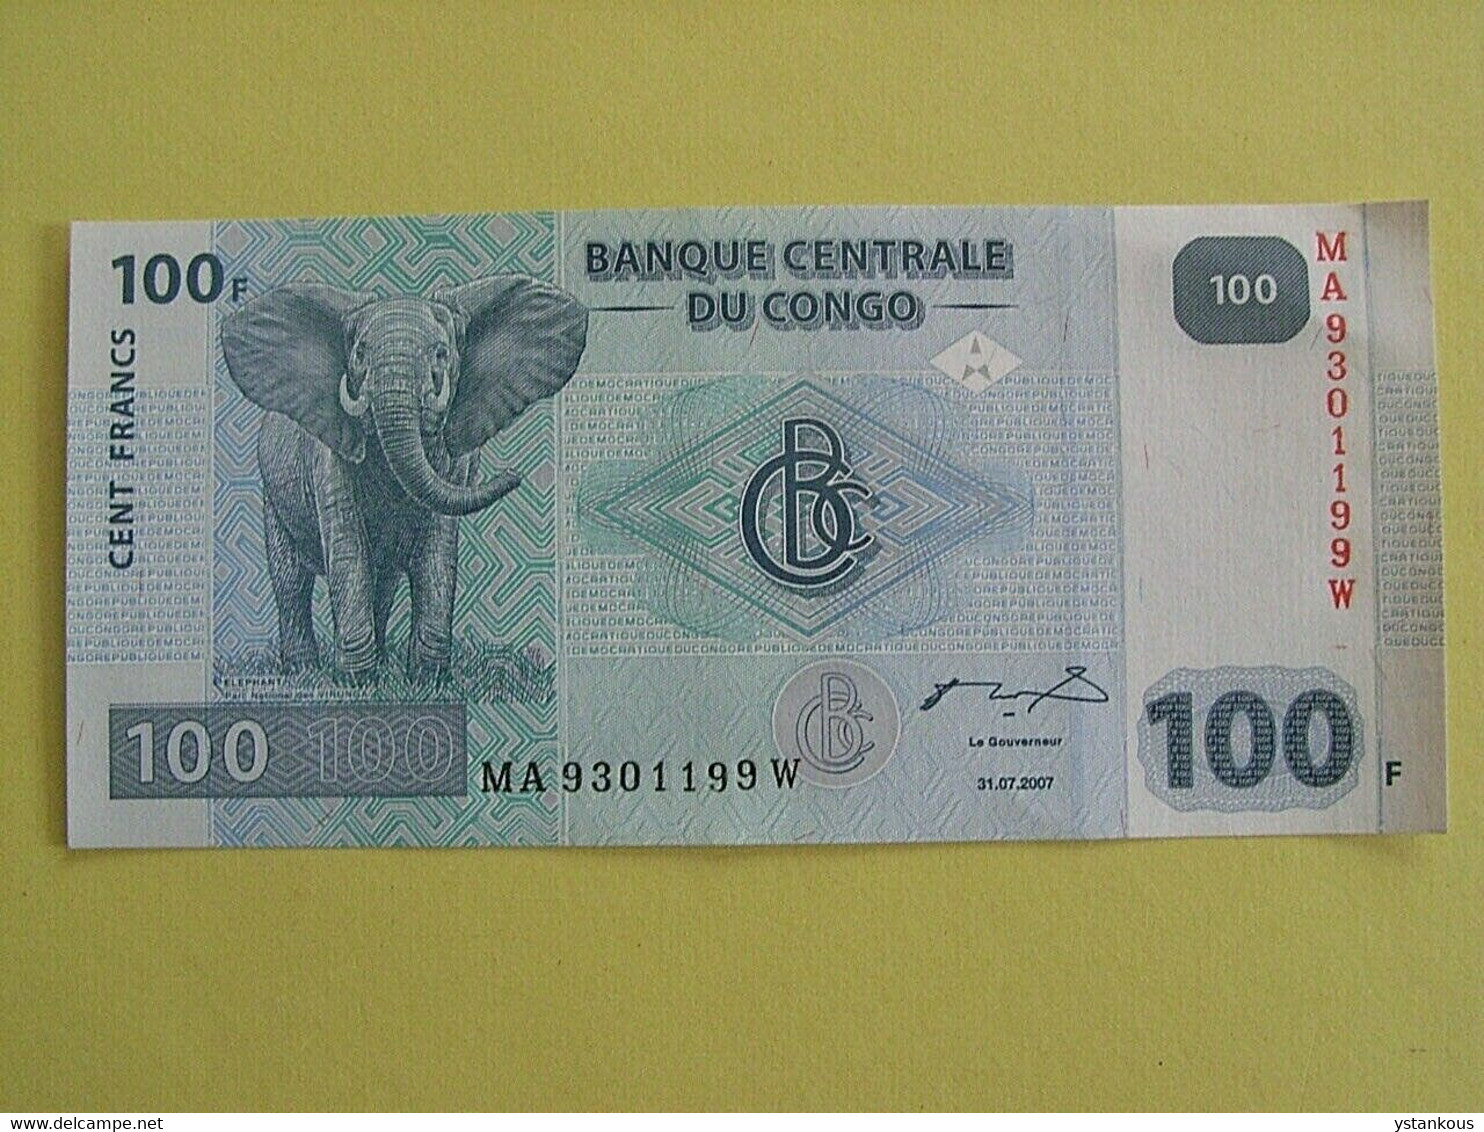 Billet De 100 Francs 2007 Banque Centrale Du Congo. - Unclassified